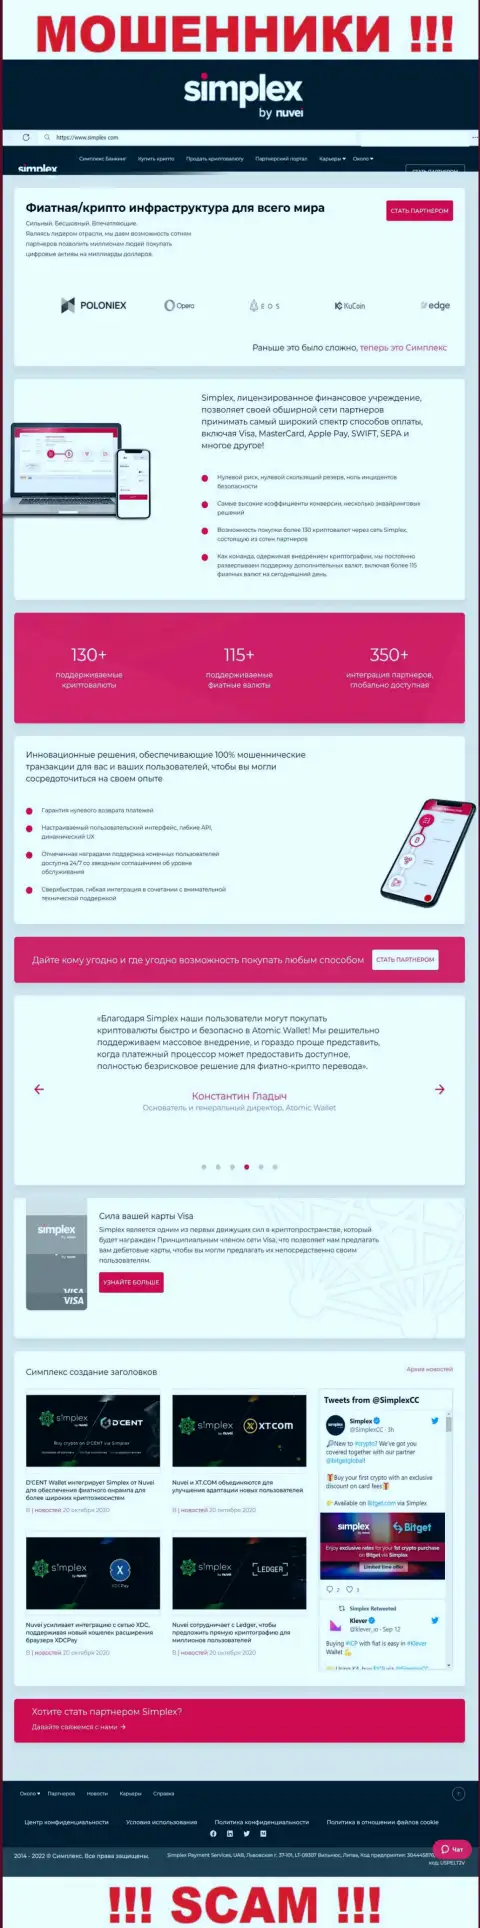 Внешний вид официальной веб странички мошеннической организации Simplex